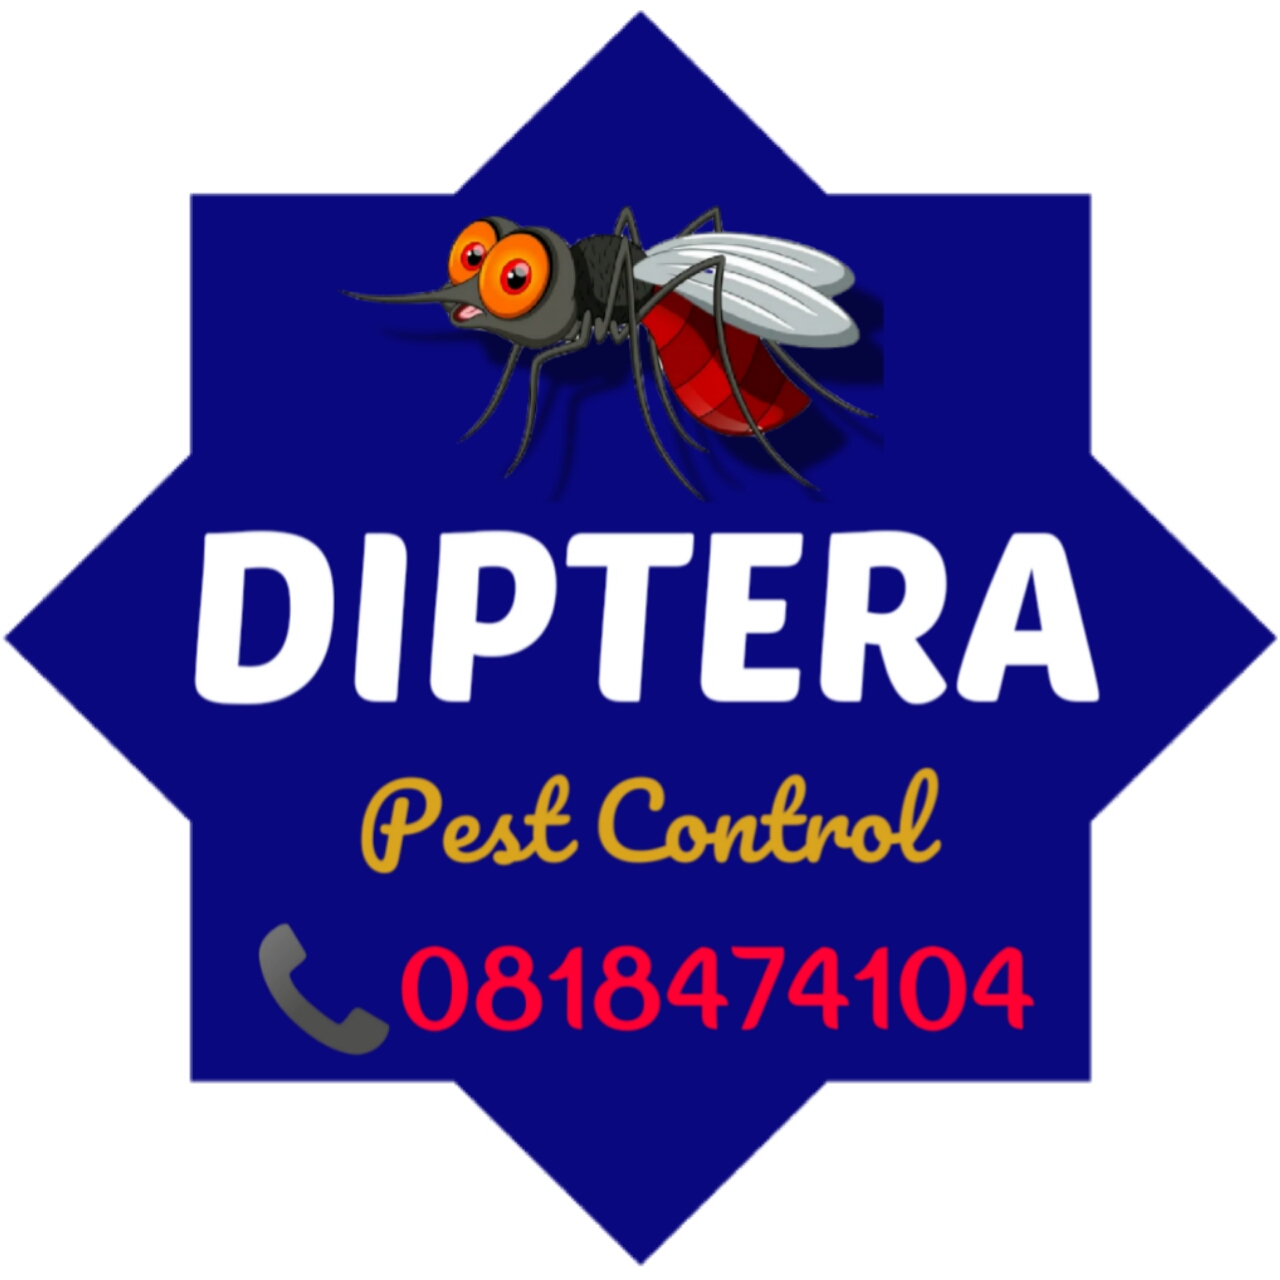 Gambar DIPTERA Pest Control logo kedua dari perusahaan CV. Tisies Orienta Utama